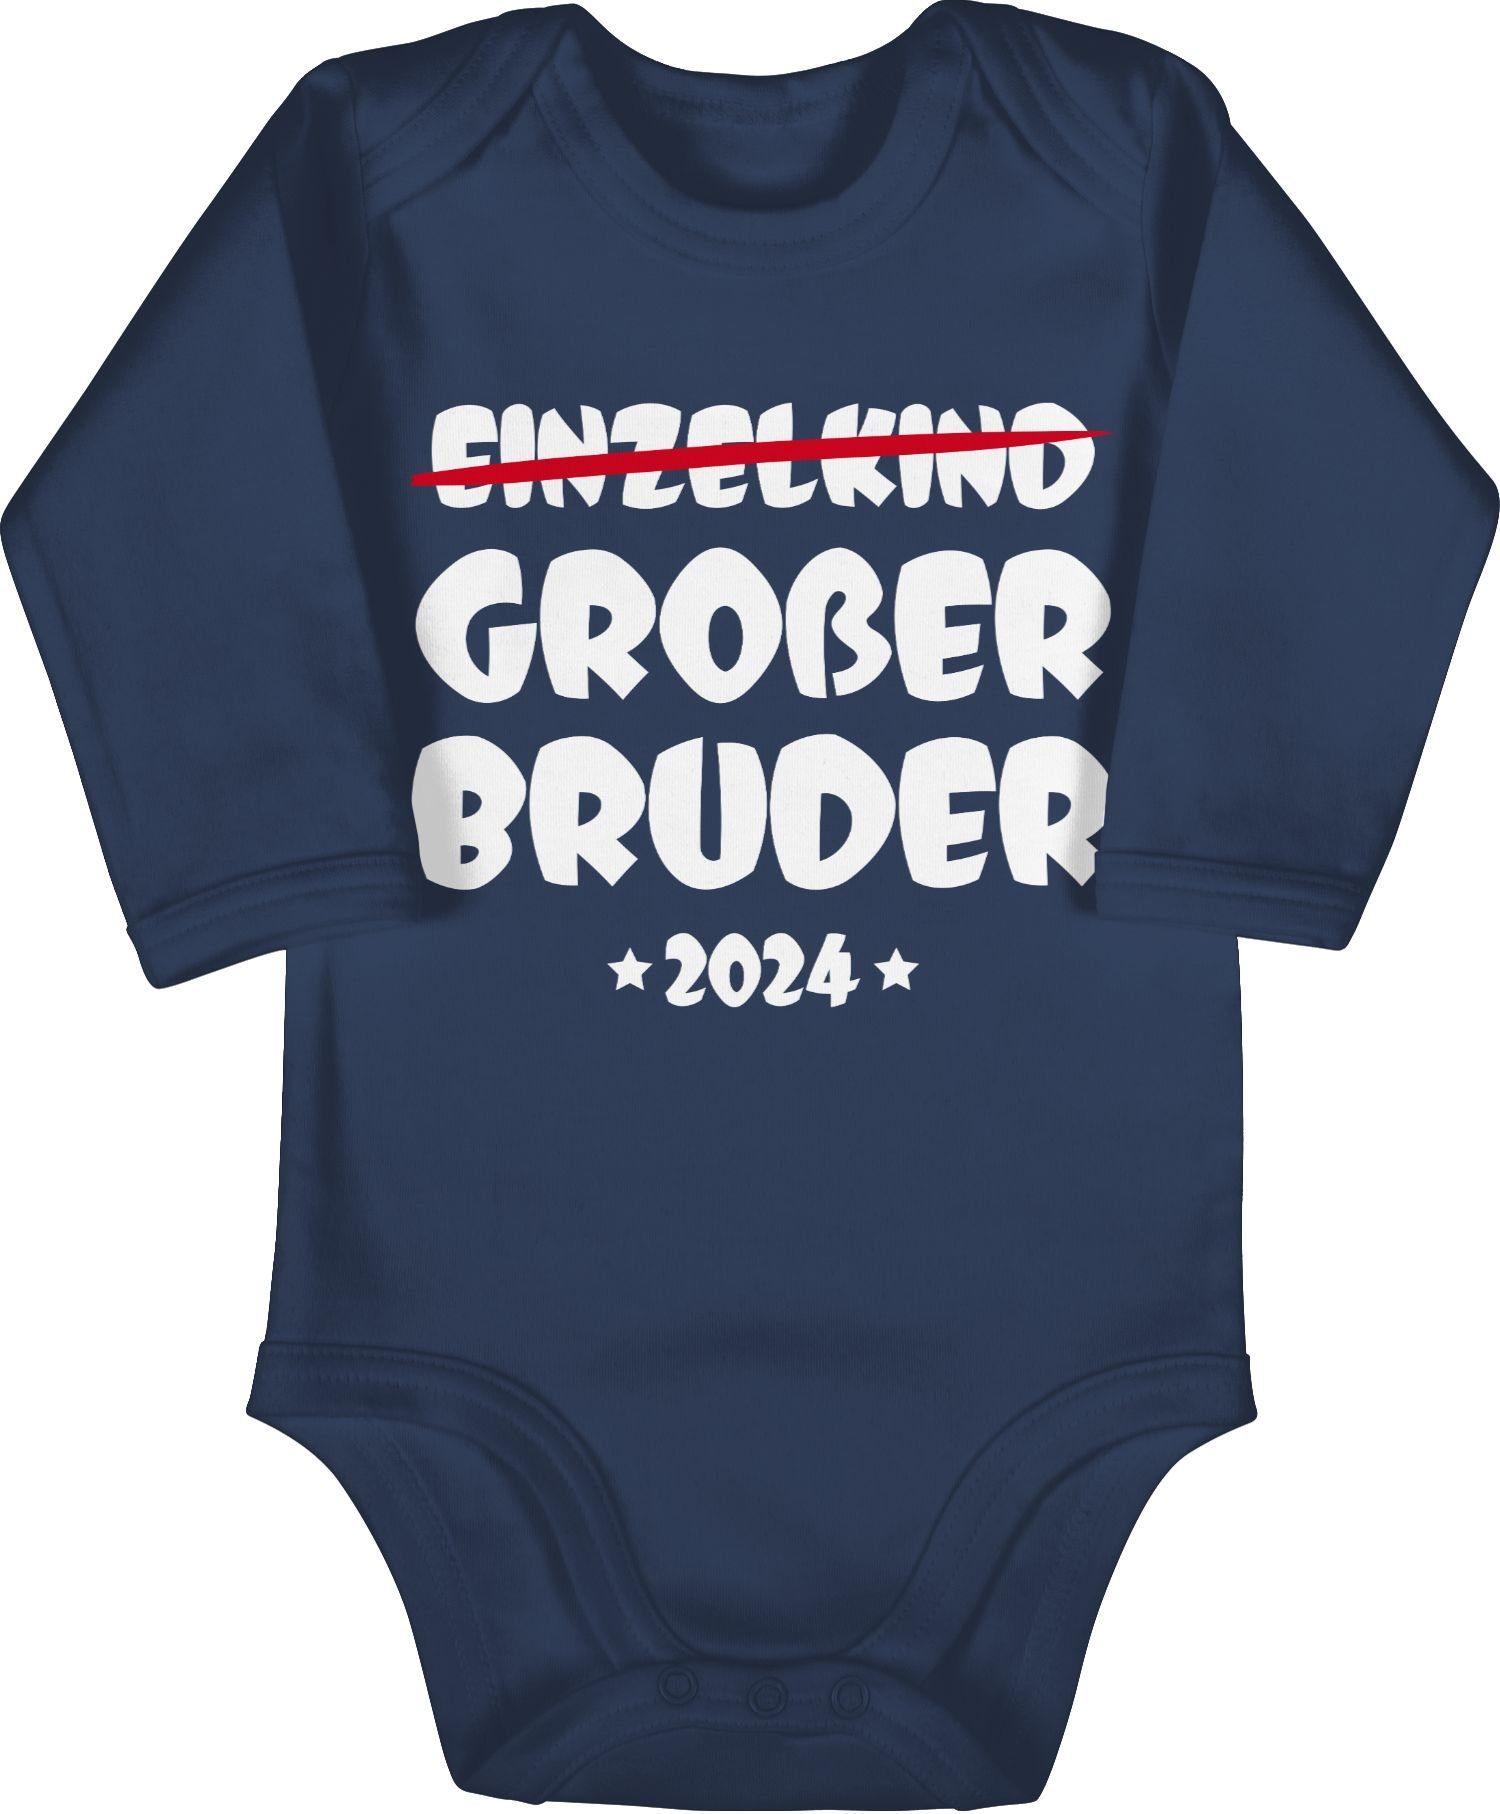 Shirtracer Shirtbody Einzelkind Großer Bruder 2024 Großer Bruder, Ein  Langarm Baby-Body gehört zu jeder Baby Erstausstattung